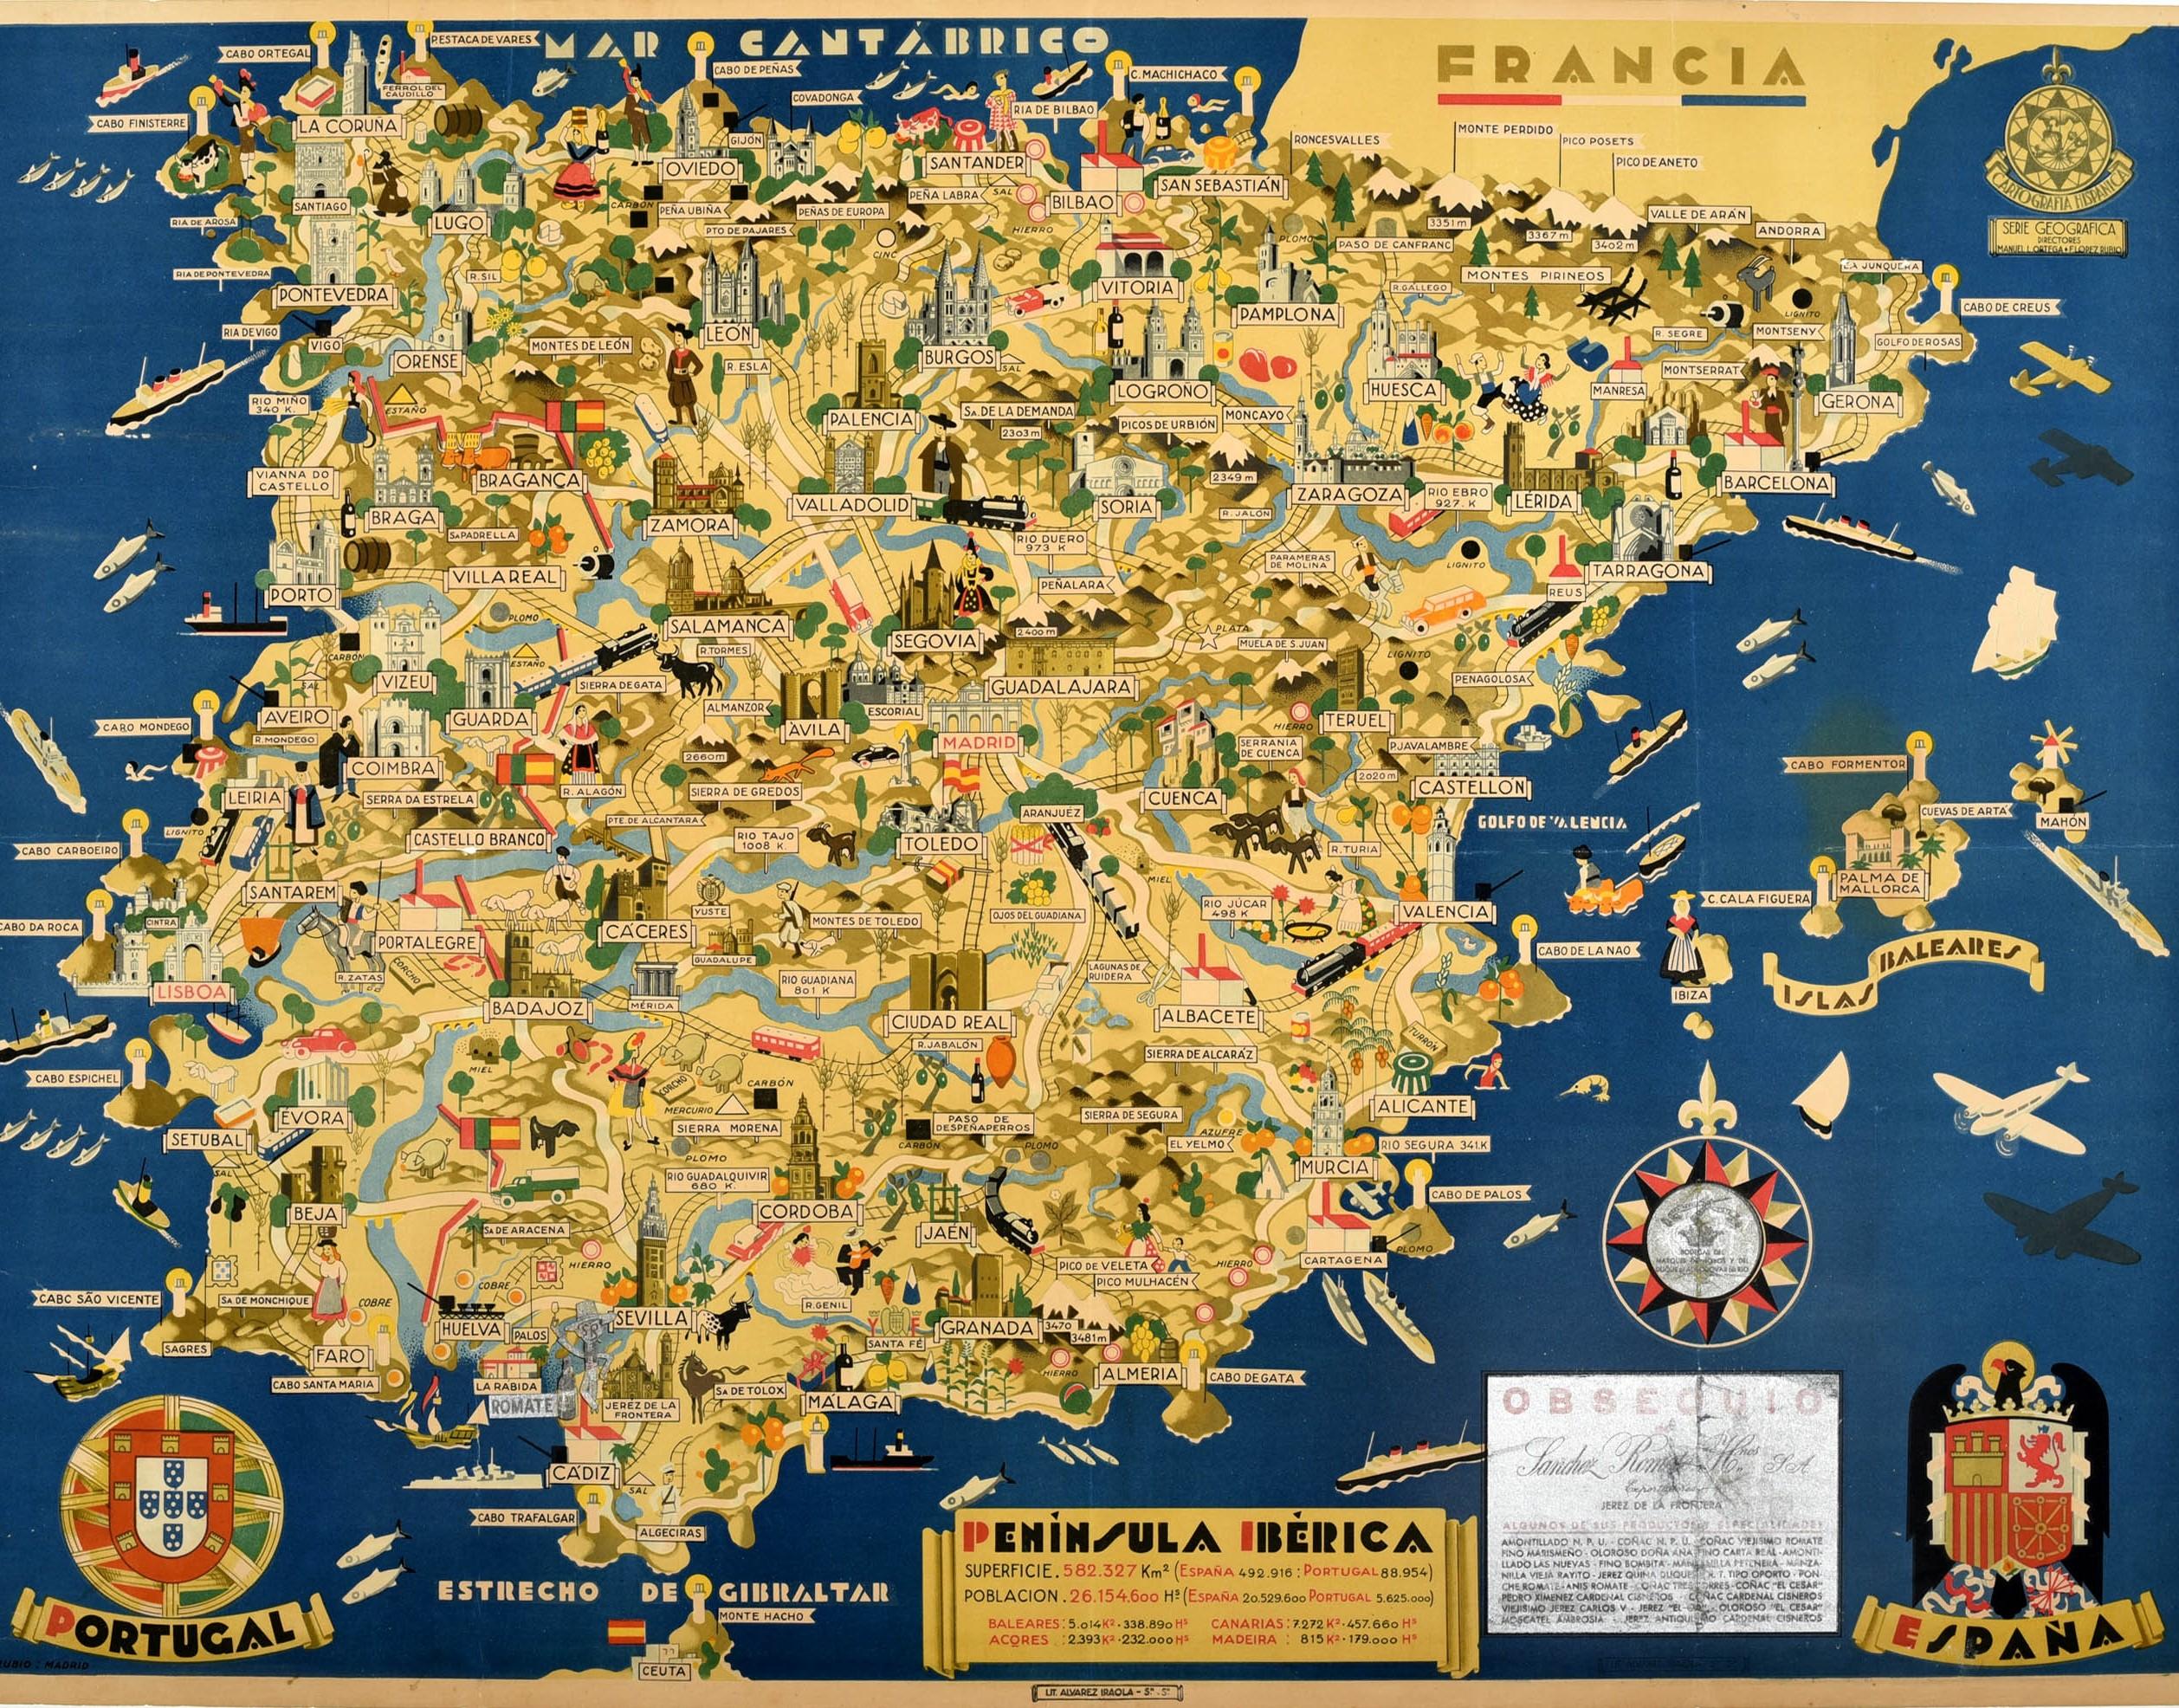 peninsula iberica map